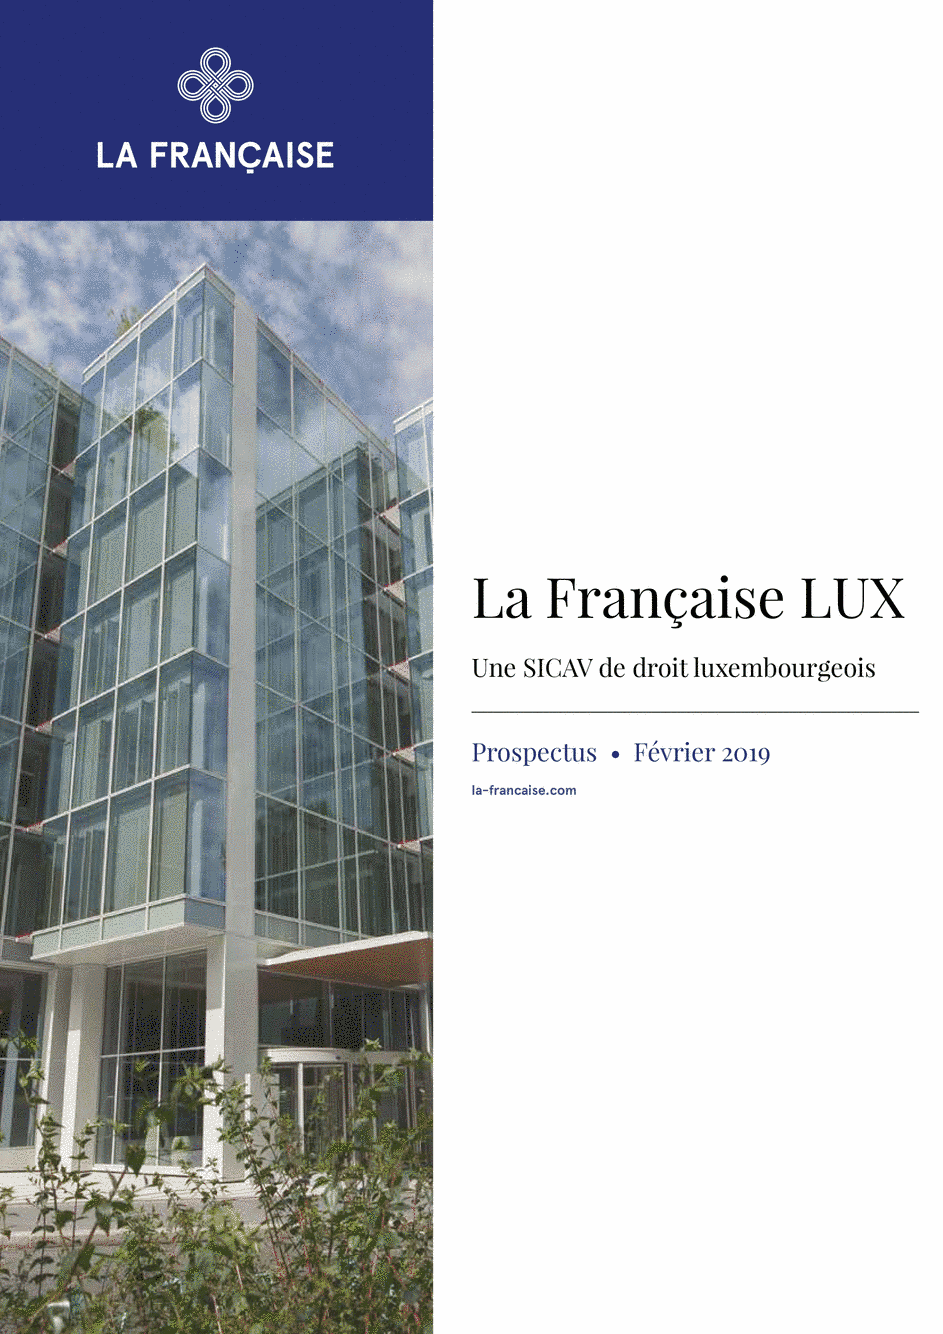 Prospectus La Française LUX - Forum Global Real Estate Securities - I (C) EUR - 01/12/2018 - Français